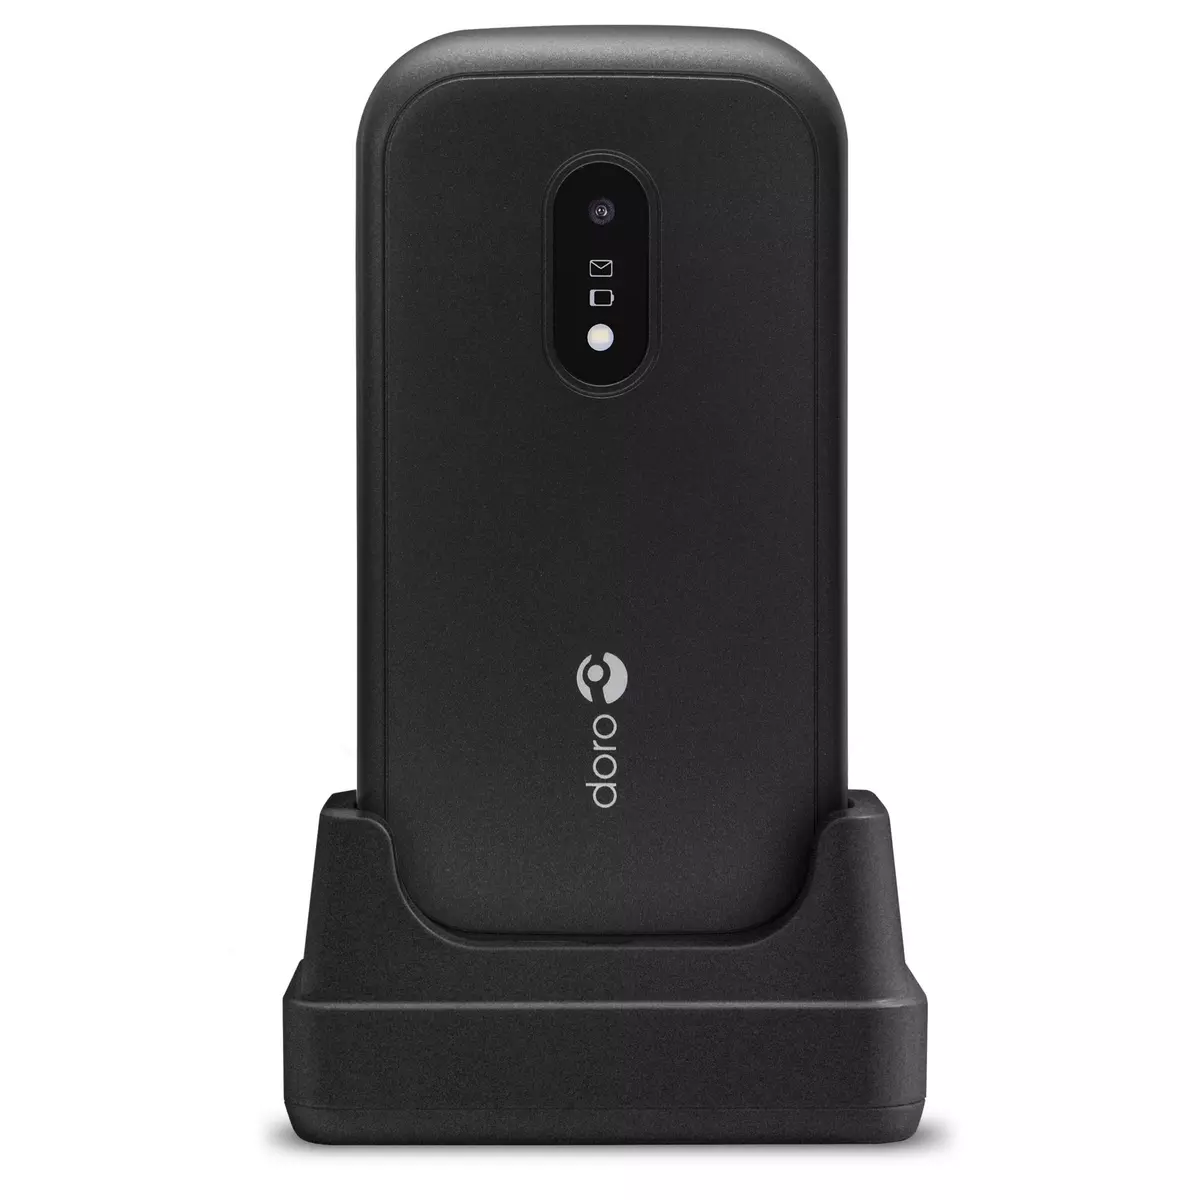 DORO Téléphone portable 6040 - Noir